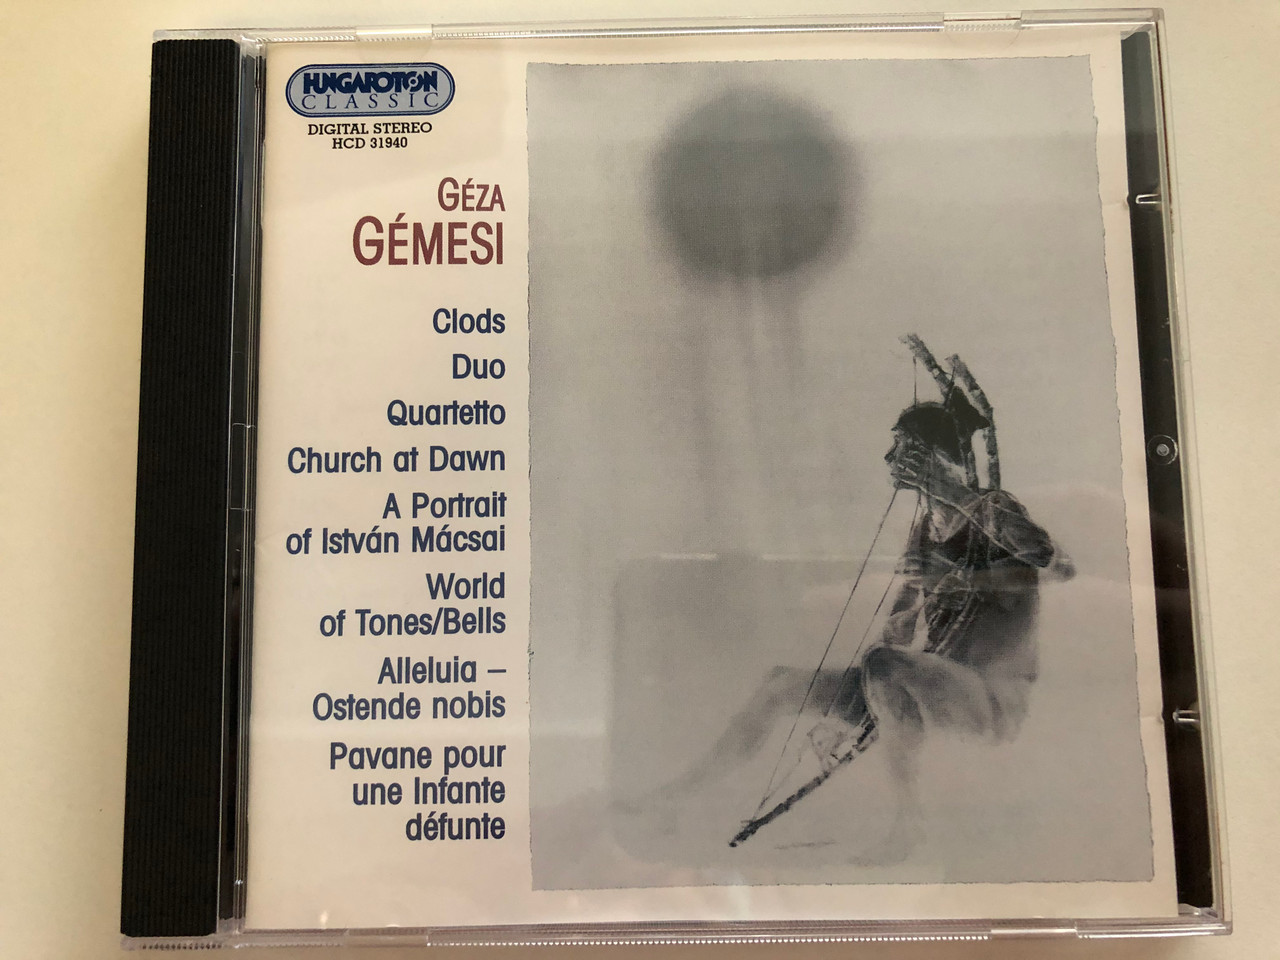 GÉMESI GÉZA - CLODS CD31940